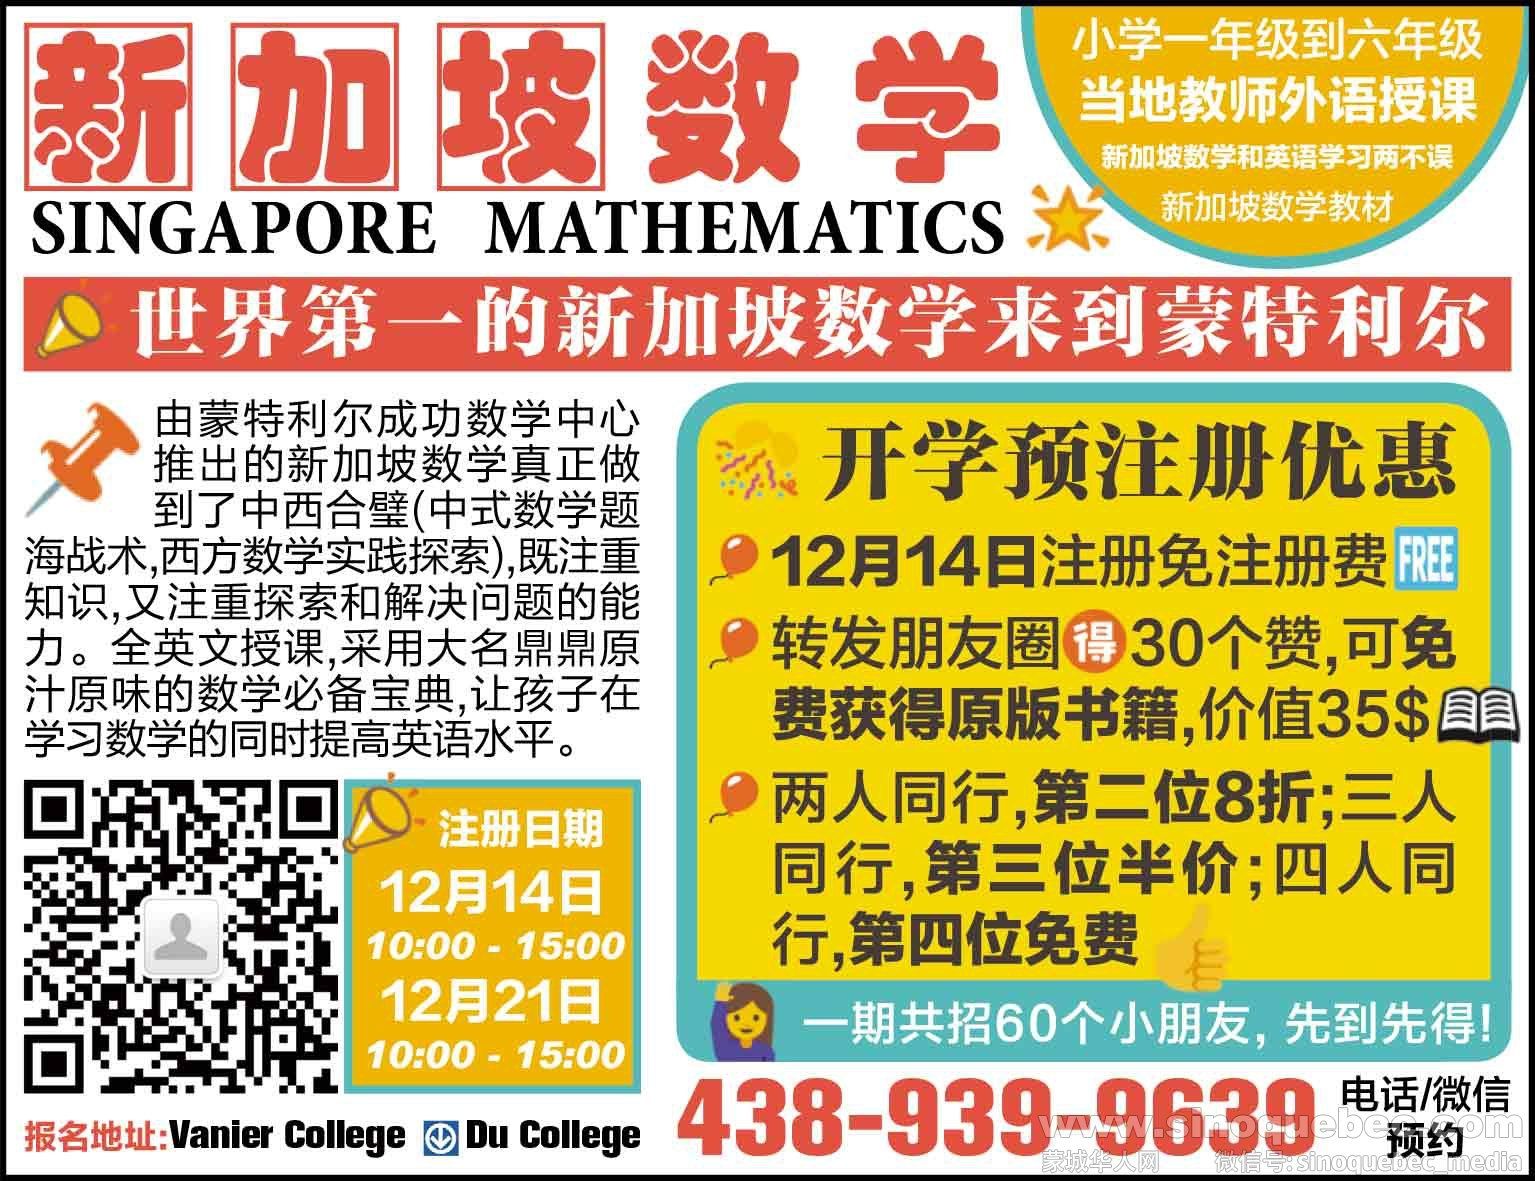 教学_新加坡数学20191108-2.jpg